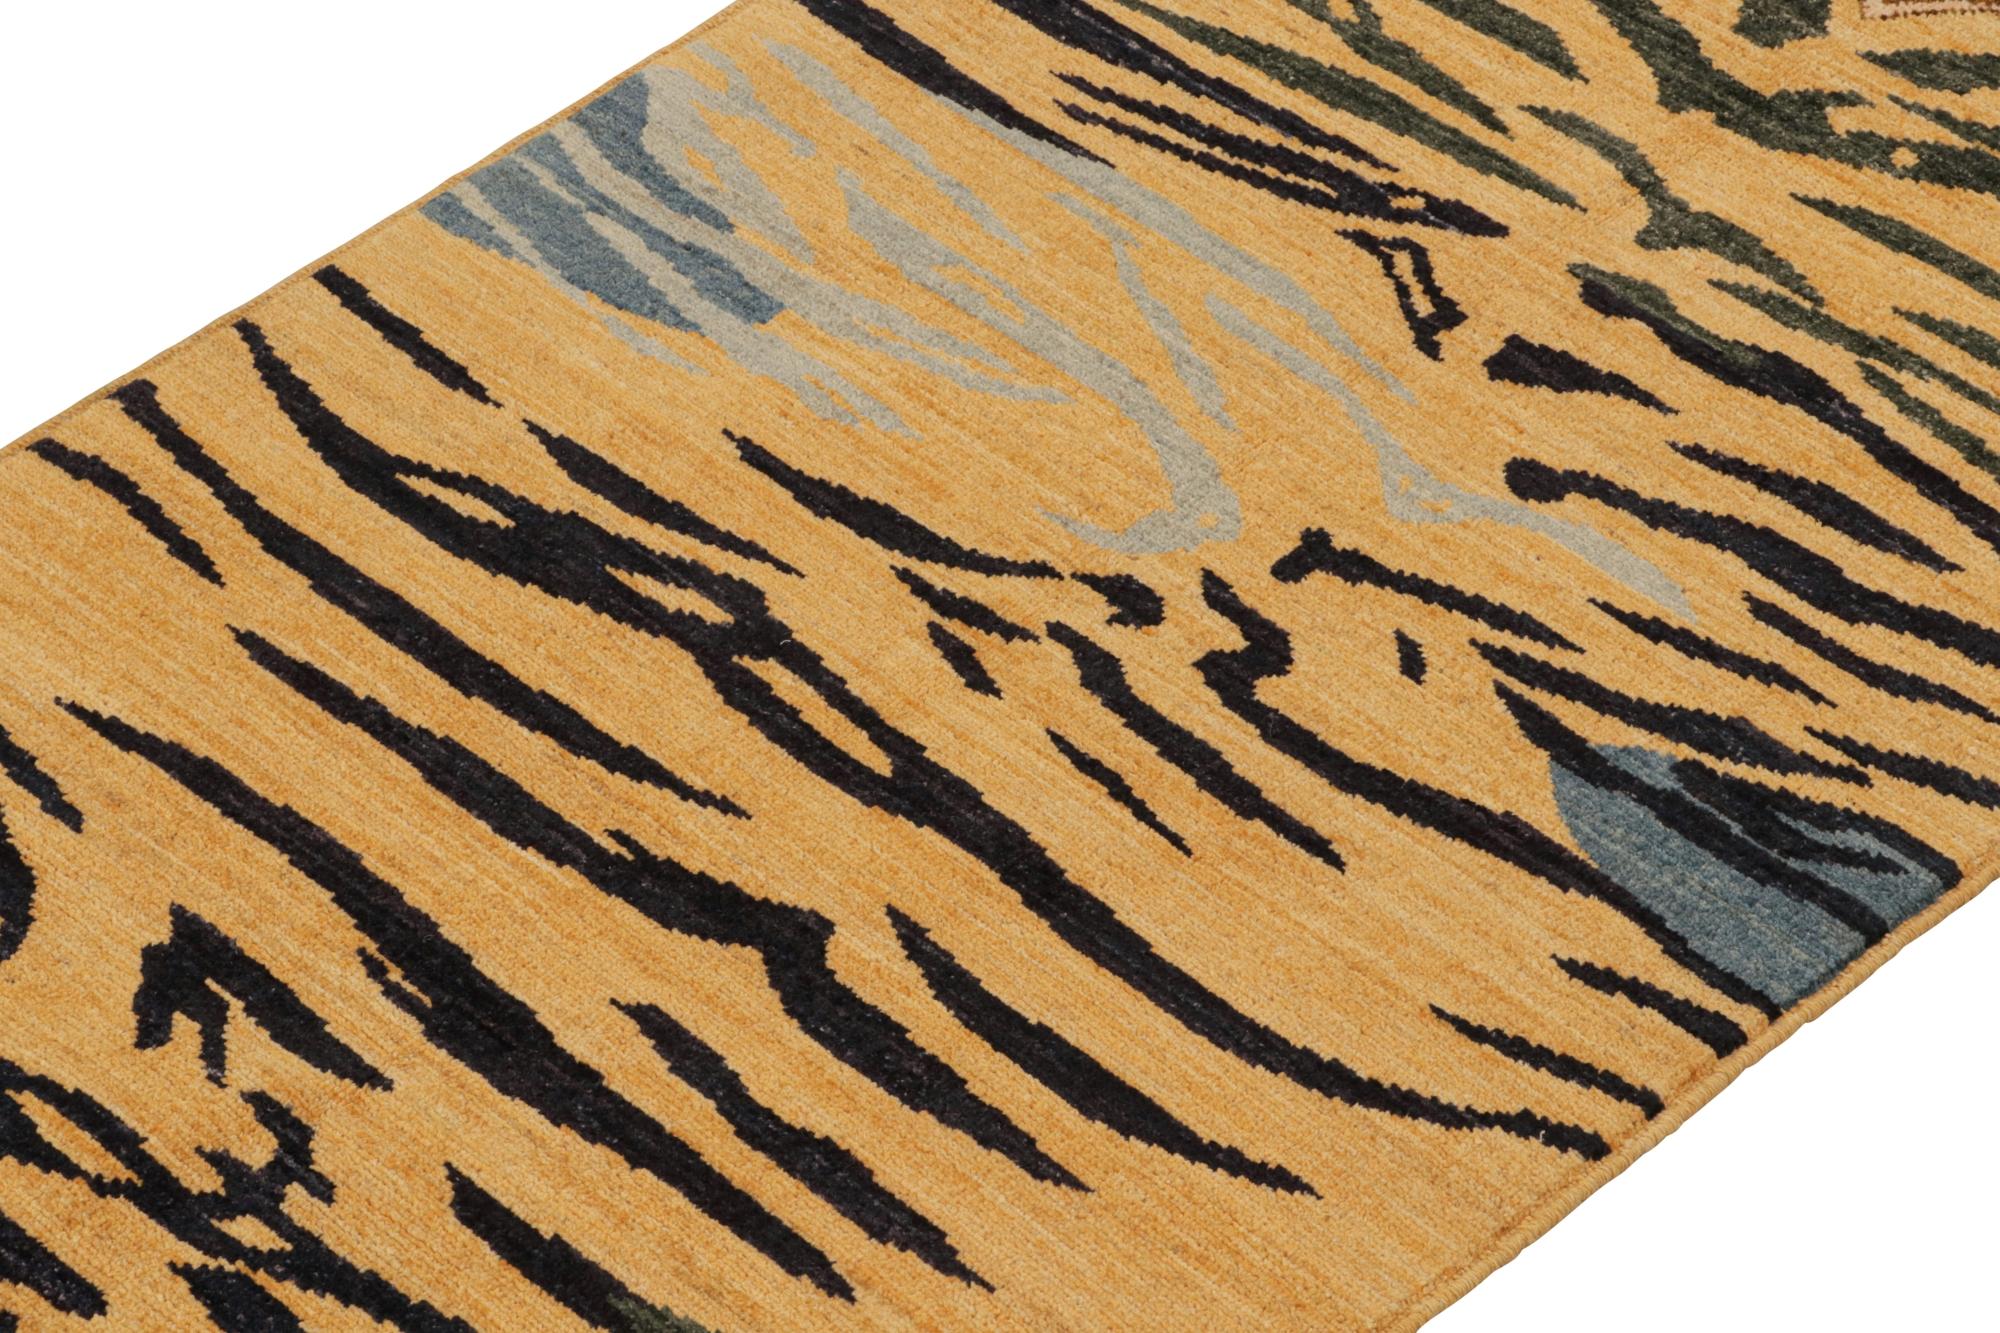 Ce tapis de course contemporain 3x6 est un nouvel ajout audacieux à la collection Tigers de Rug & Kilim. Notre collection s'étend sur plusieurs cultures et reprend les styles picturaux emblématiques de l'art populaire et des tapis orientaux faits